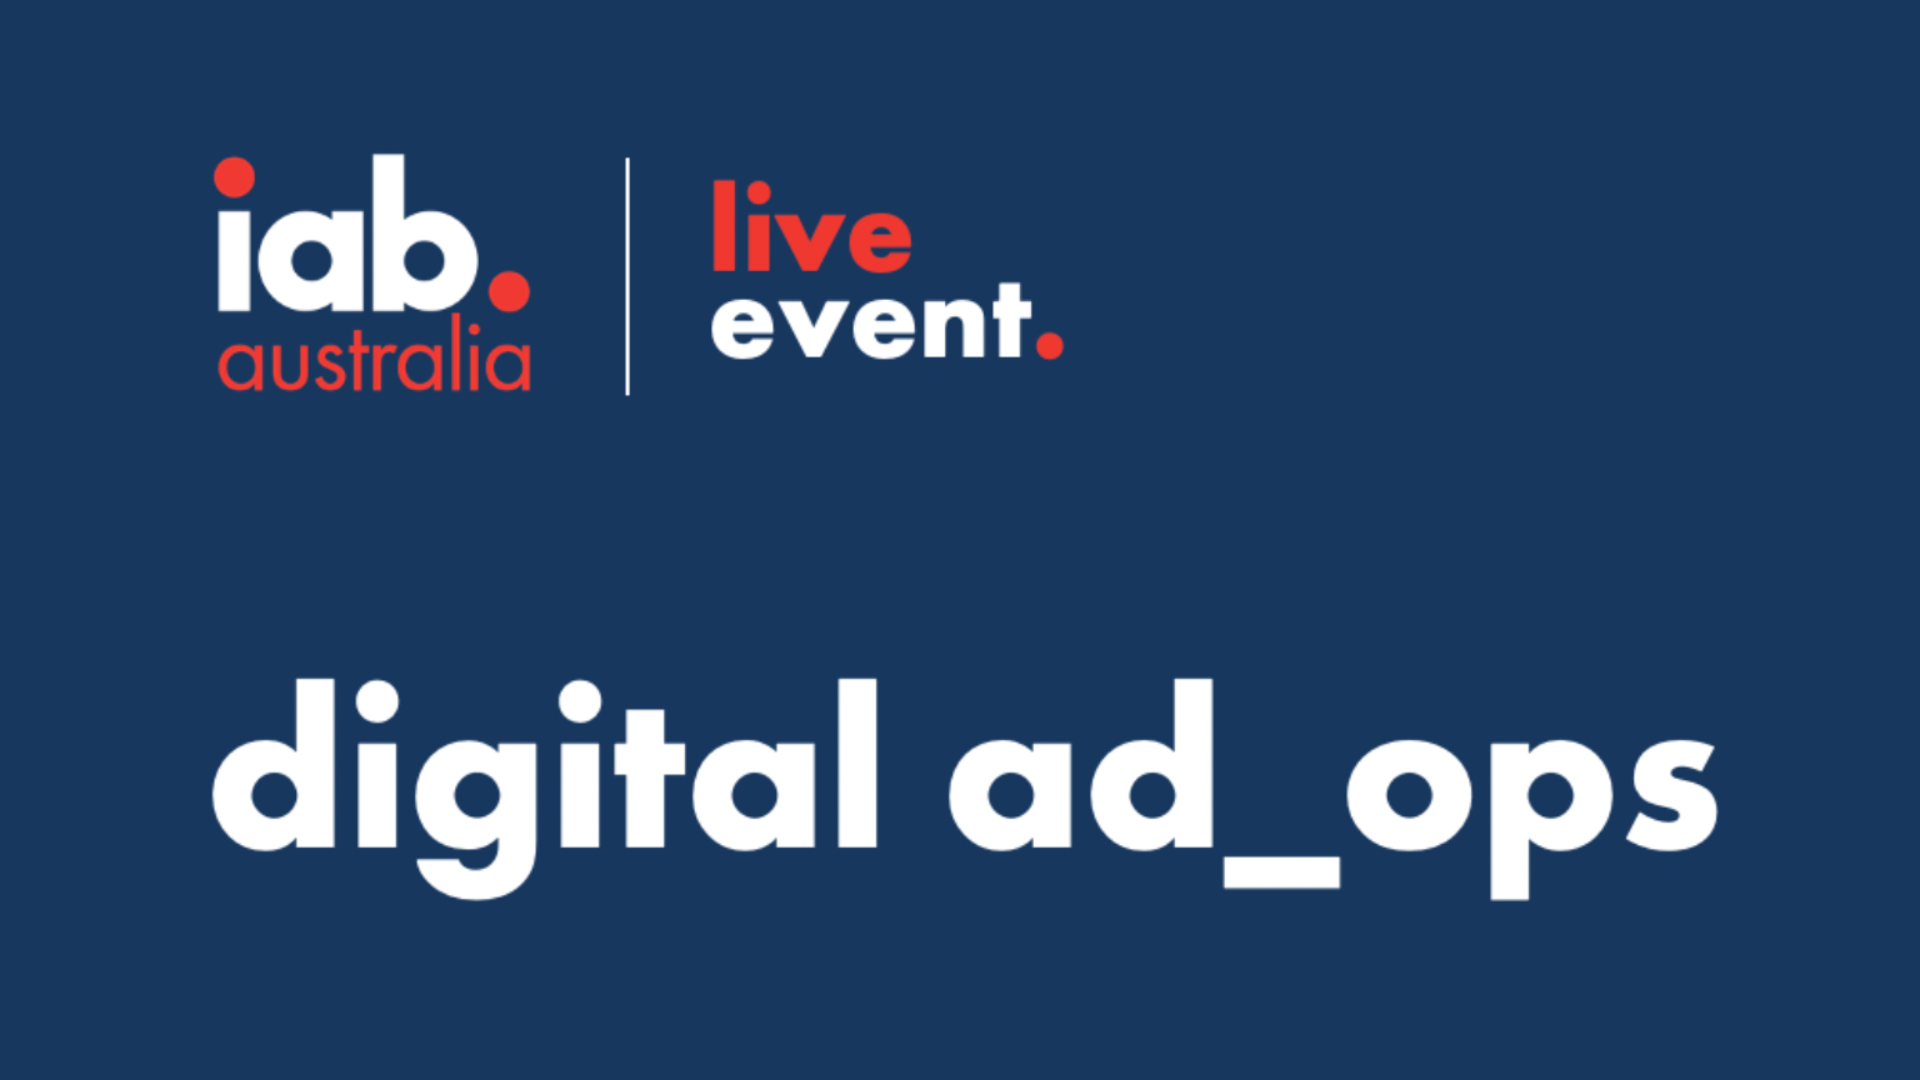 The IAB Digital AdOps Conference Sydney